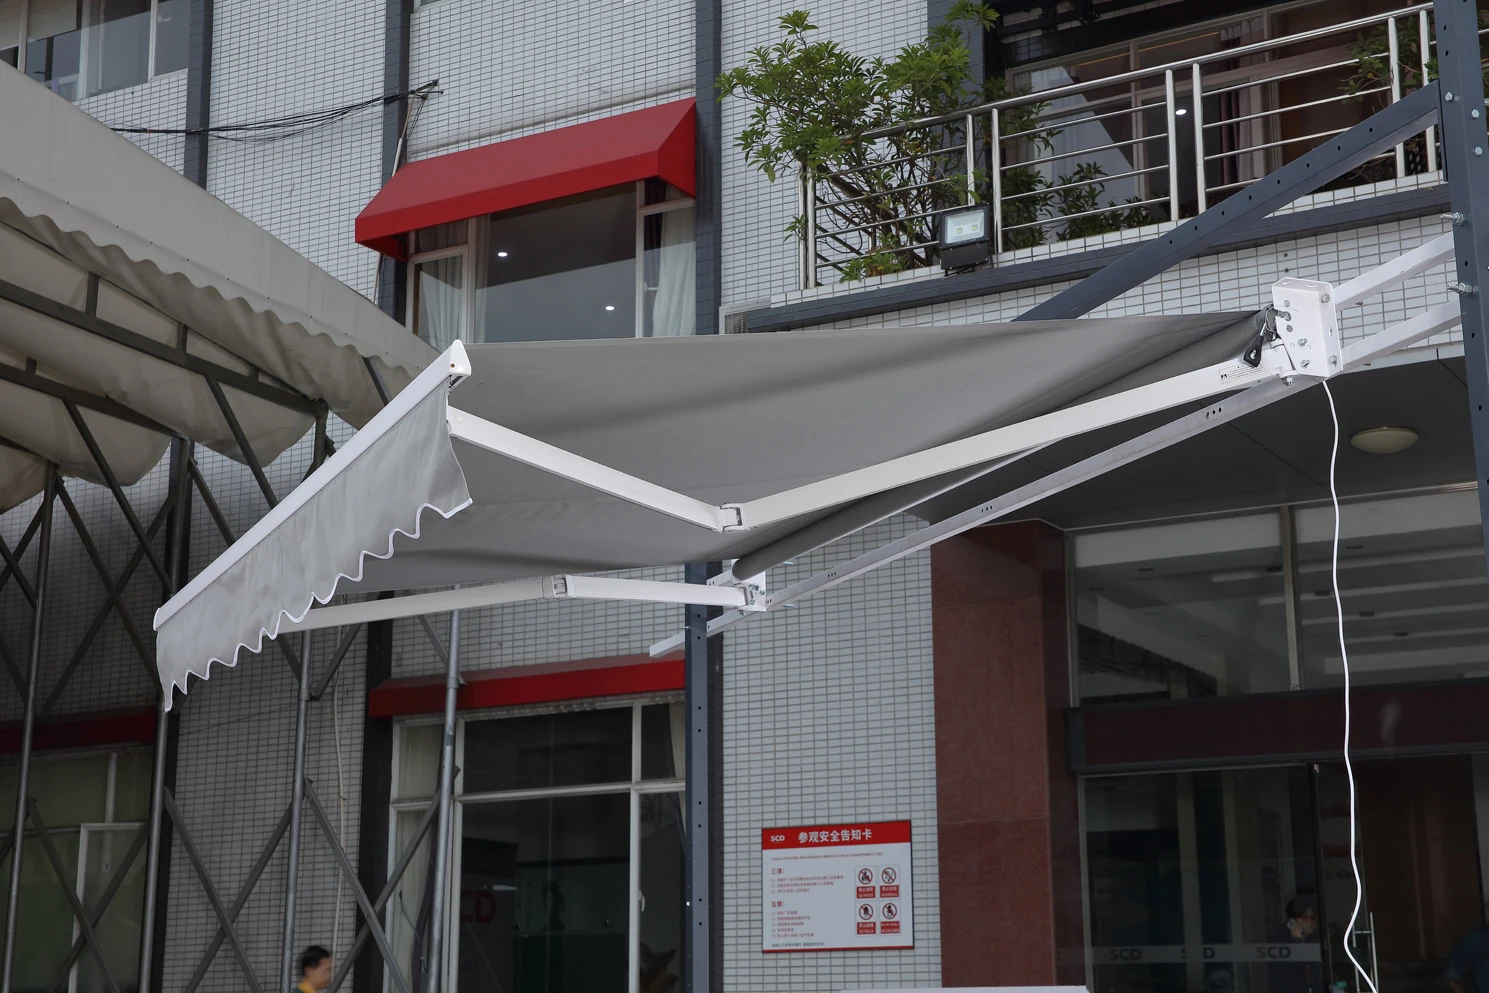 A05 Harga Rendah Aluminium Sun Shade Deck Retractable Motorized Awning Buy Retractable Motorized Awning